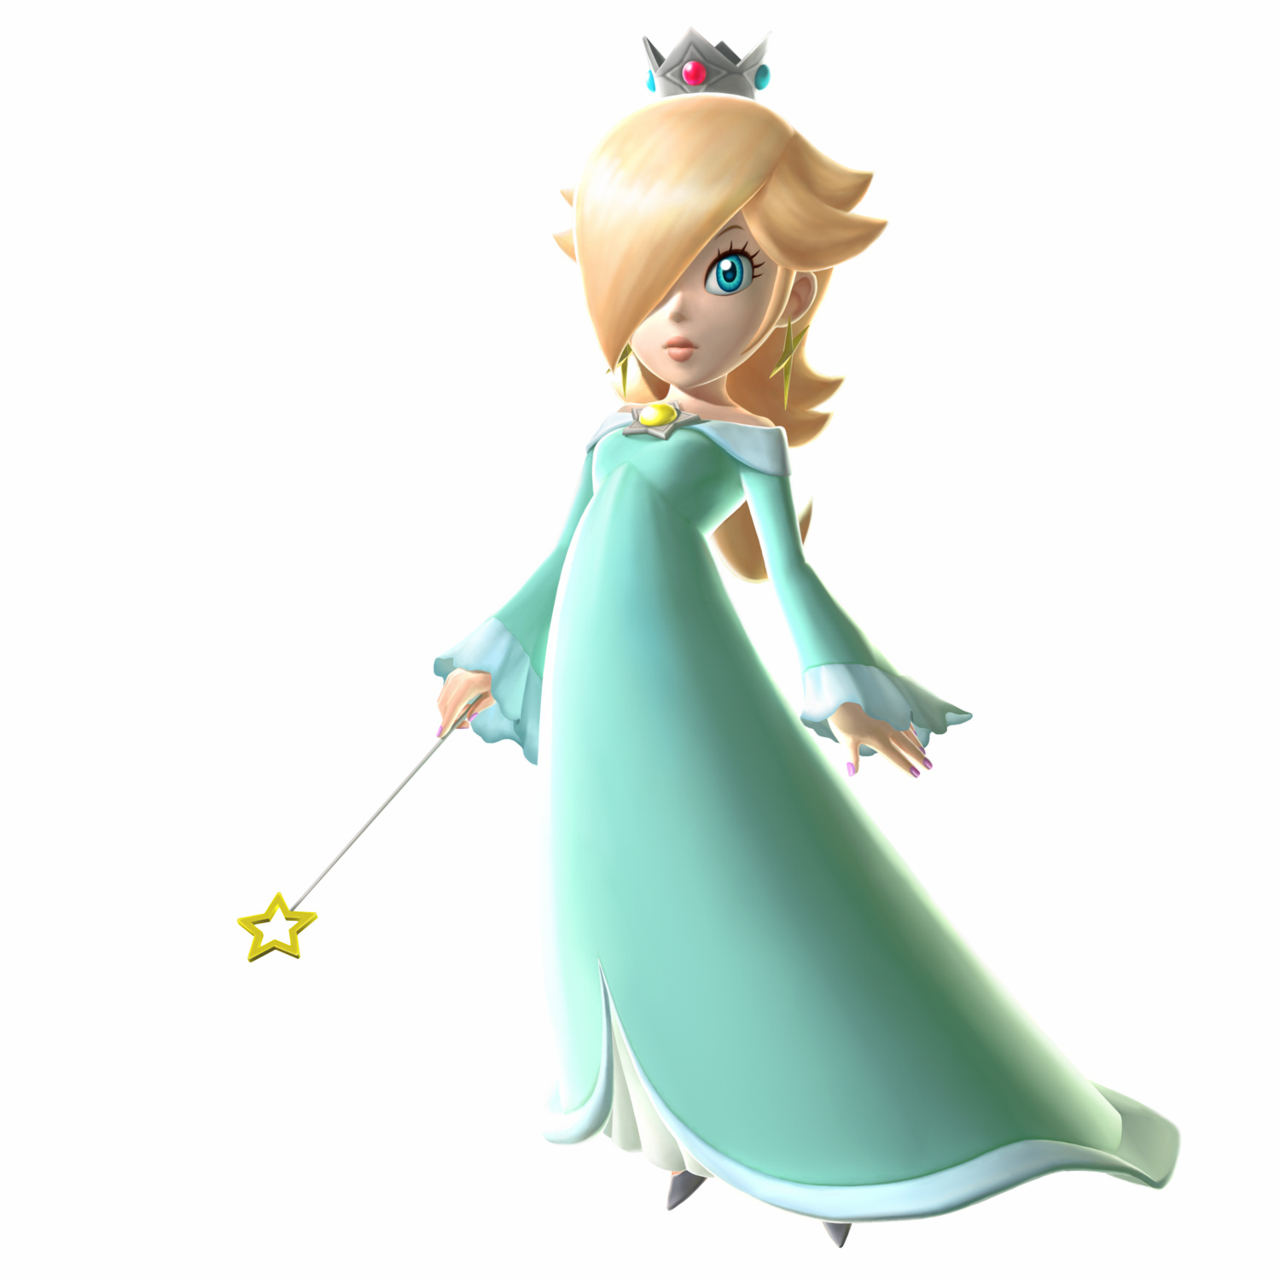 Princess Rosalina Super Mario Galaxy Games Wallpaper